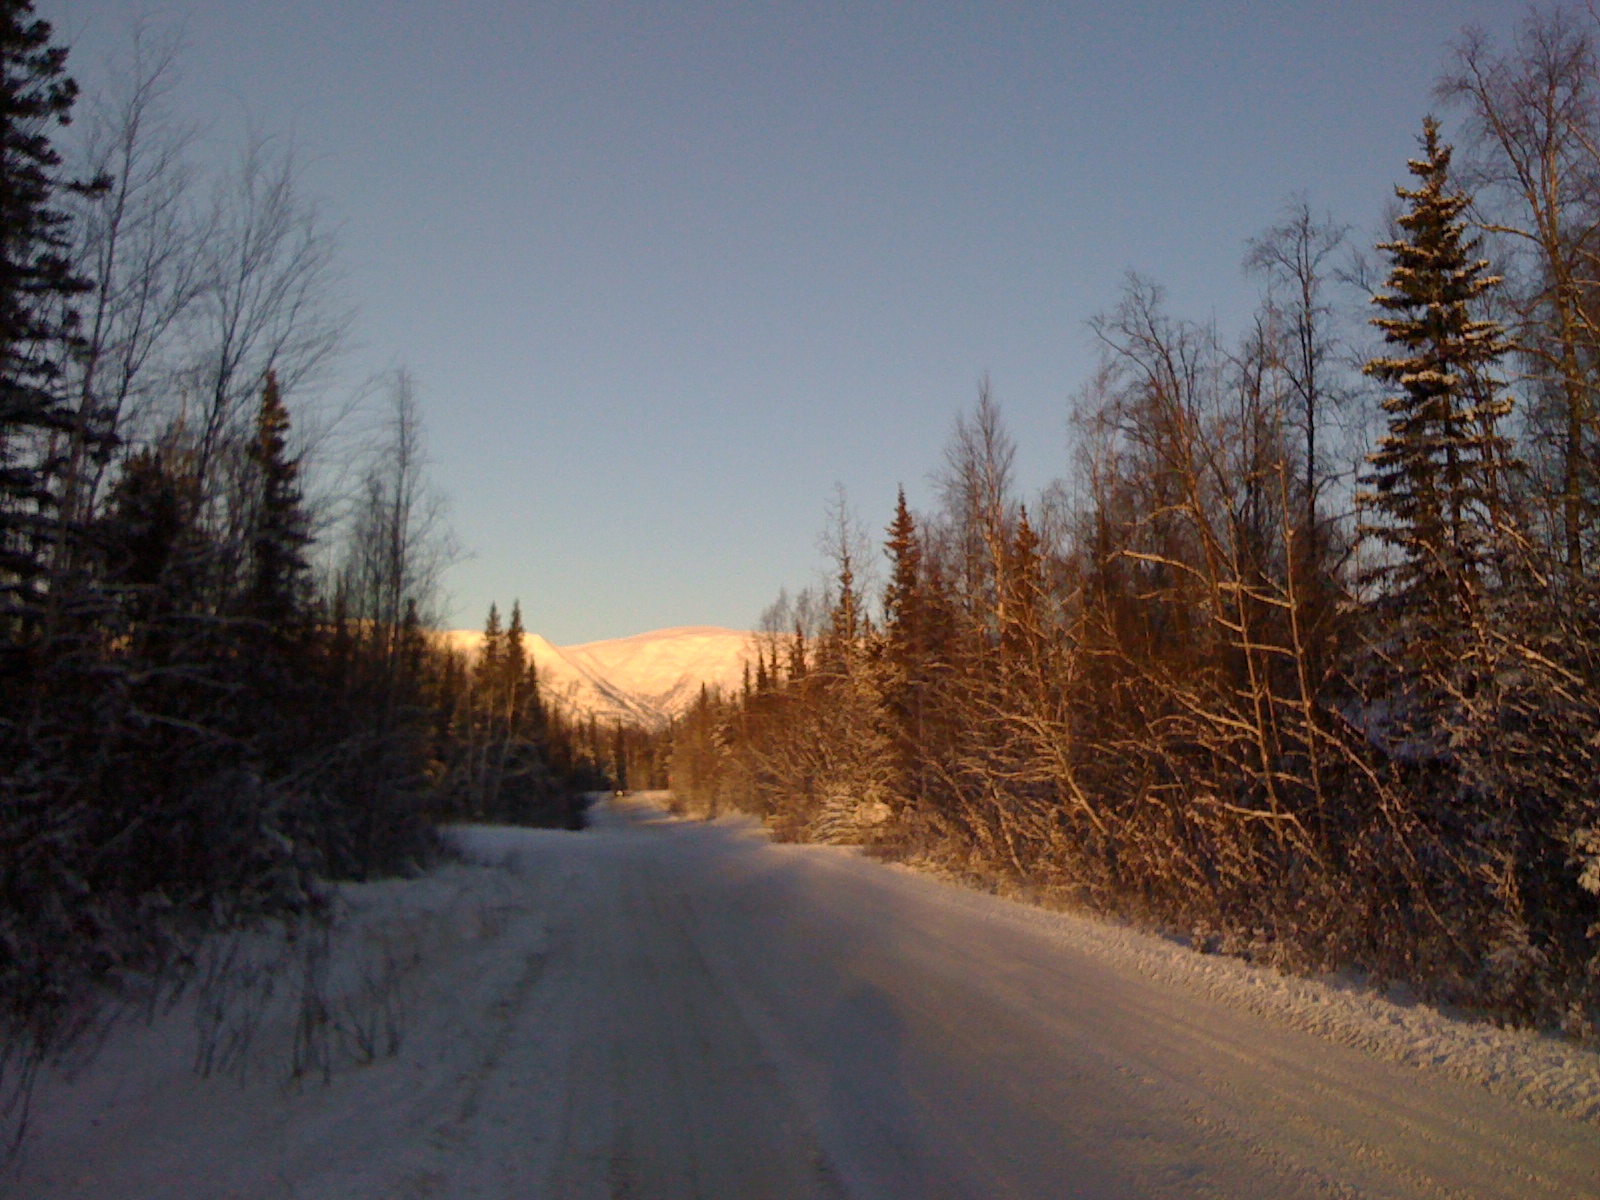 Wasilla, Alaska Hatcher Pass mountain - December 5, 2010.